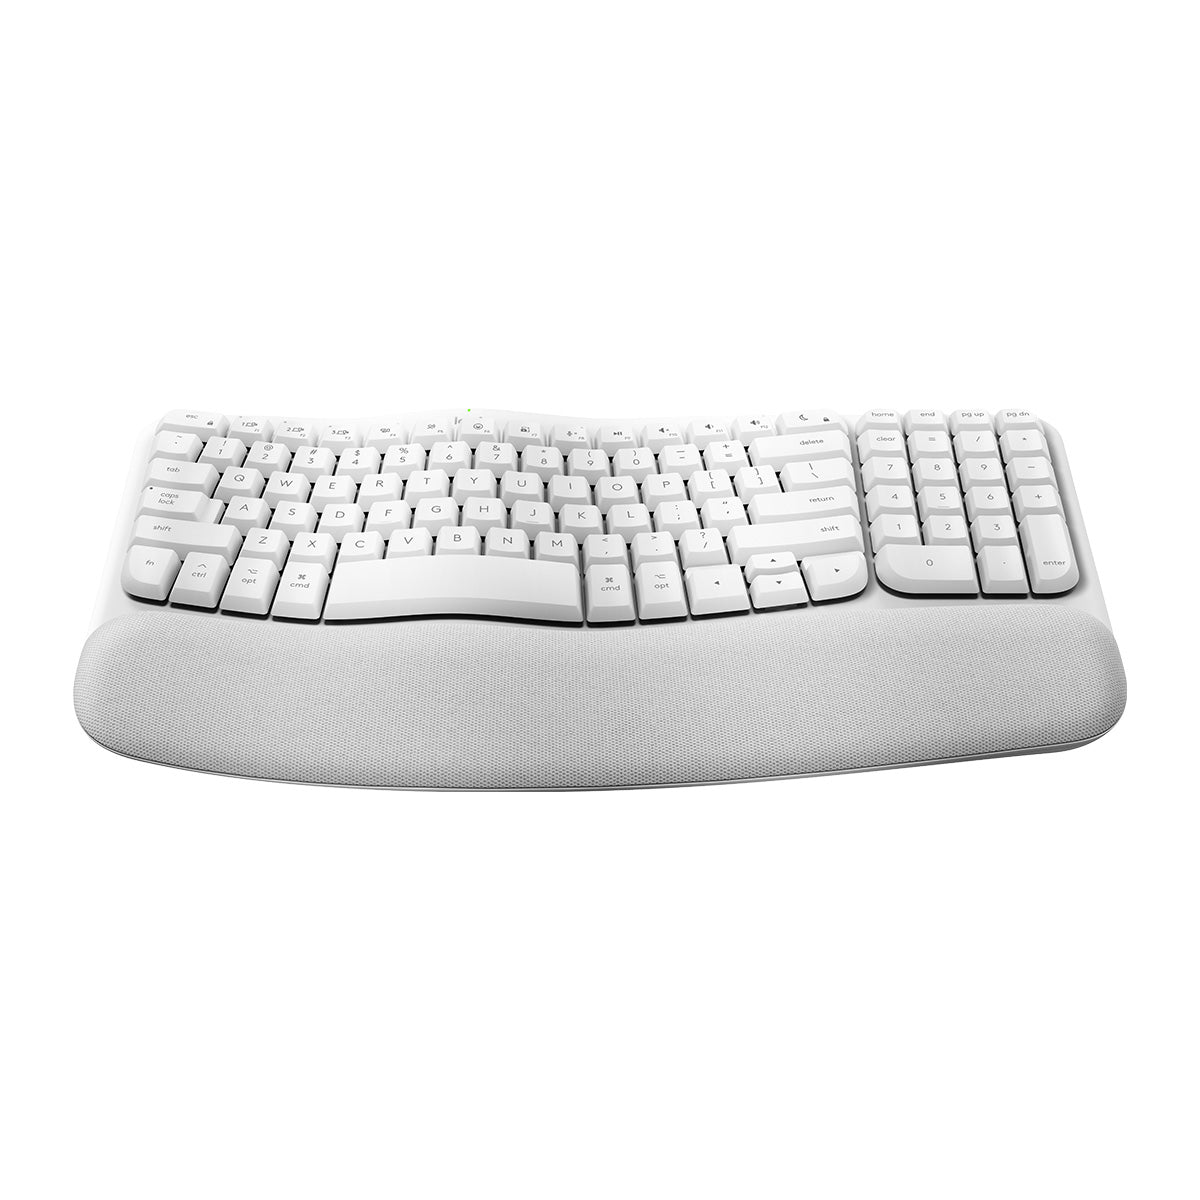 WAVE KEYS Ergonomic Wireless Keyboard